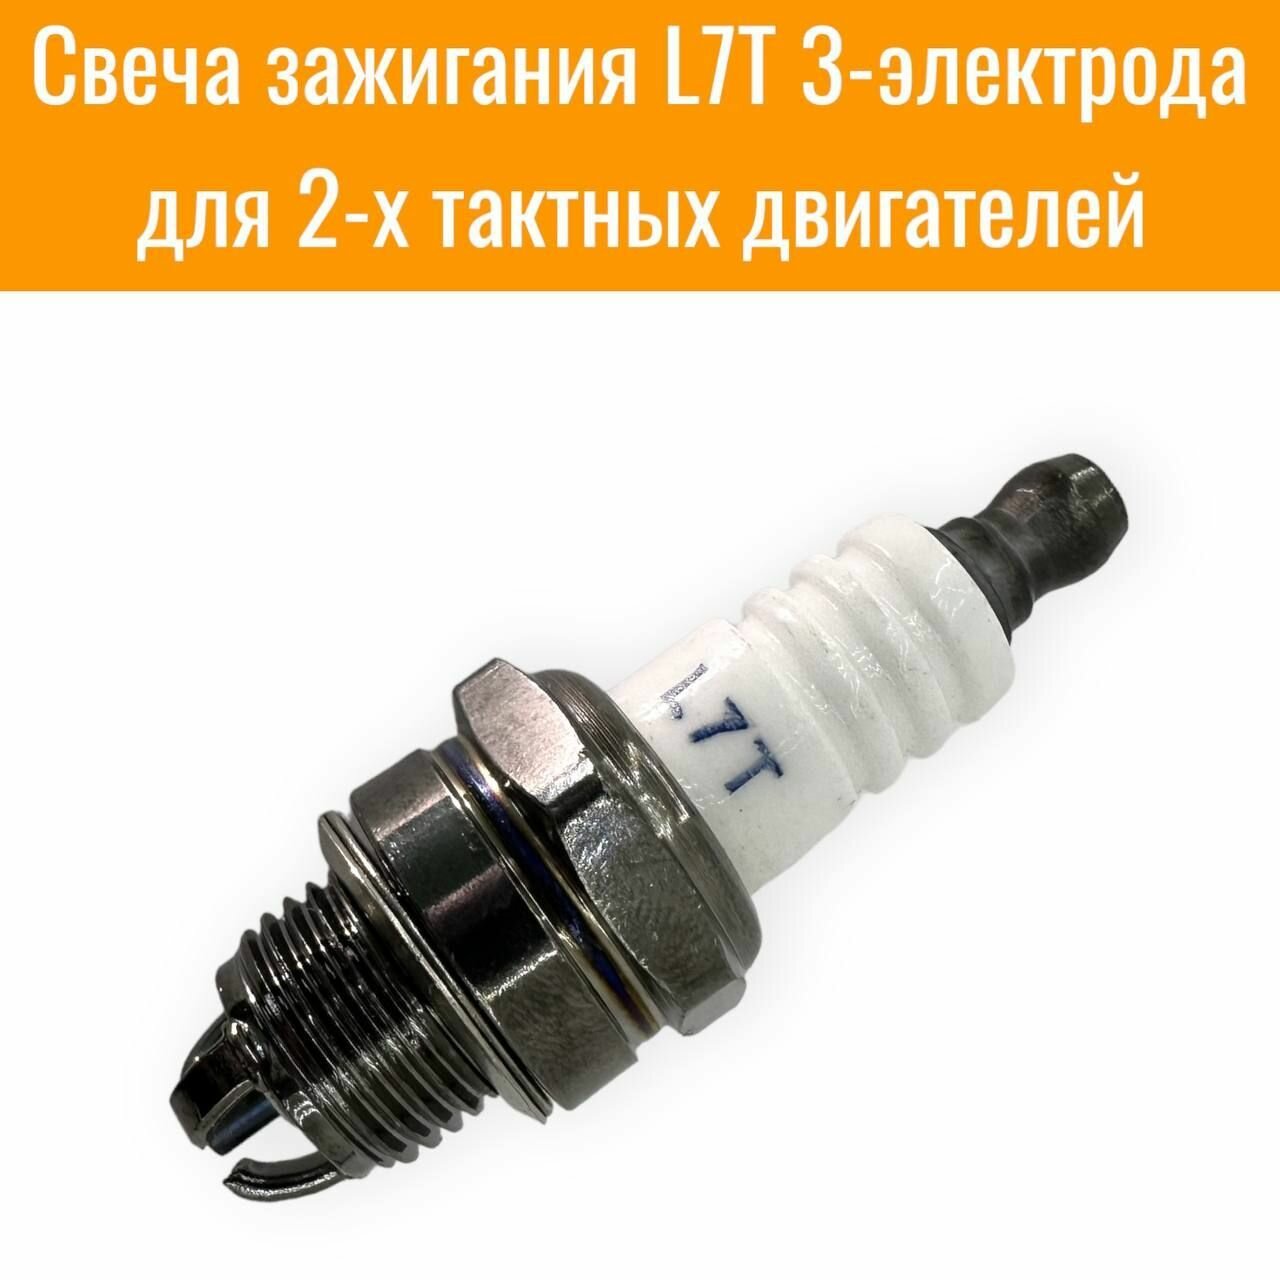 Свеча зажигания L7T 3-электрода для бензопил, триммеров, бензокосилок, газонокосилок.